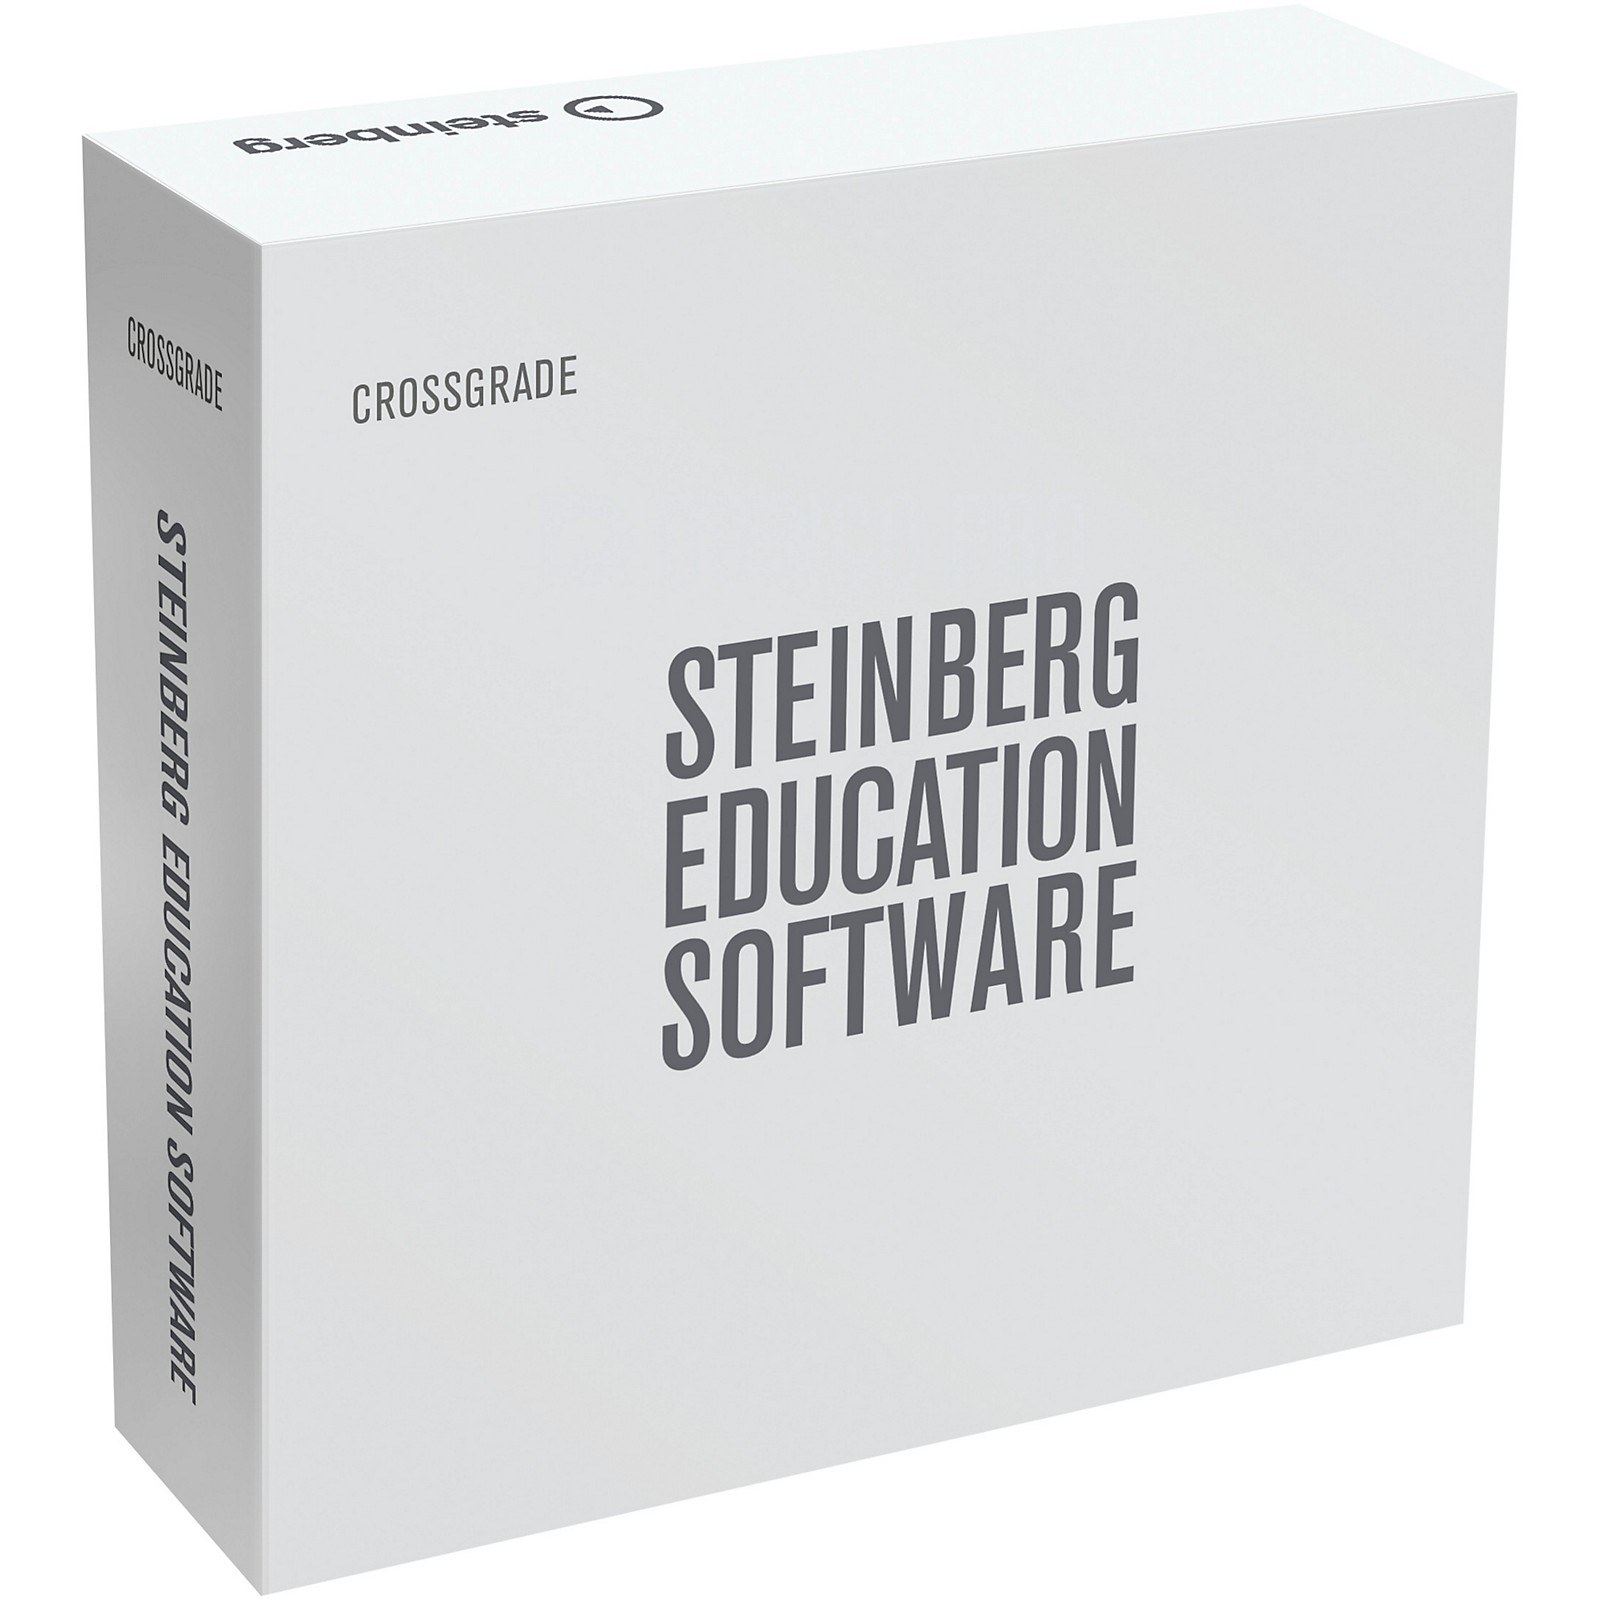 download Steinberg Dorico Pro 5.0.10